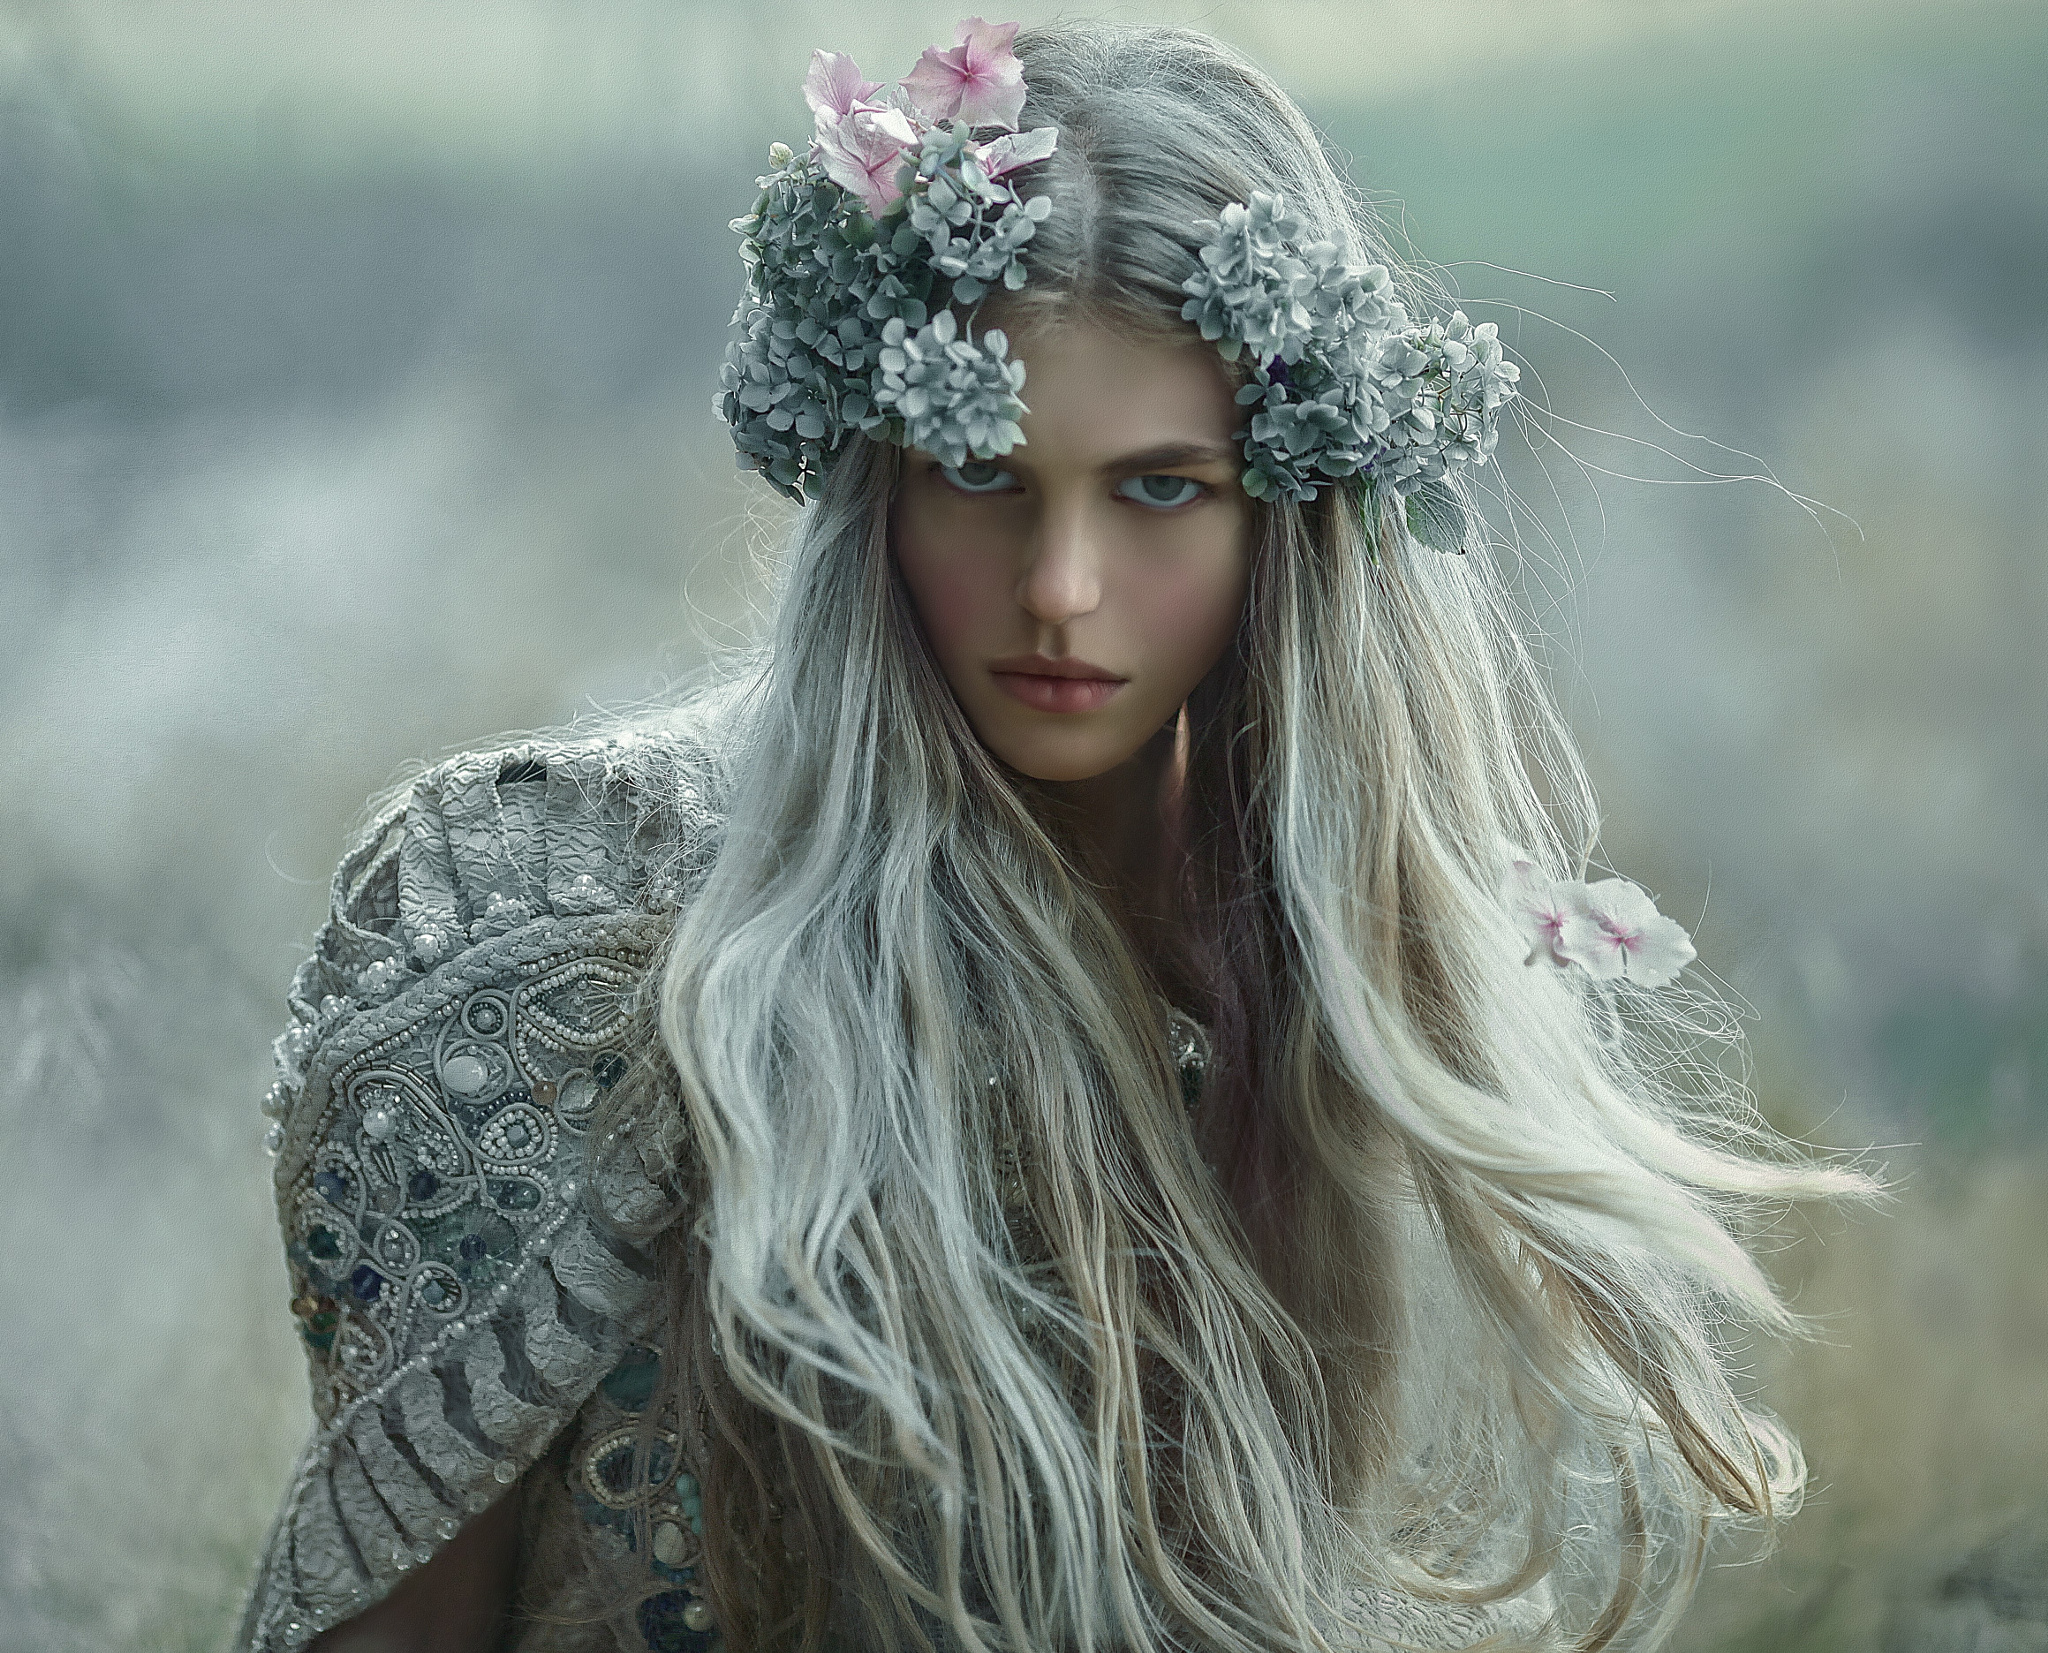  Девушка с длинными волосами с цветами на волосах, by Agnieszka Lorek